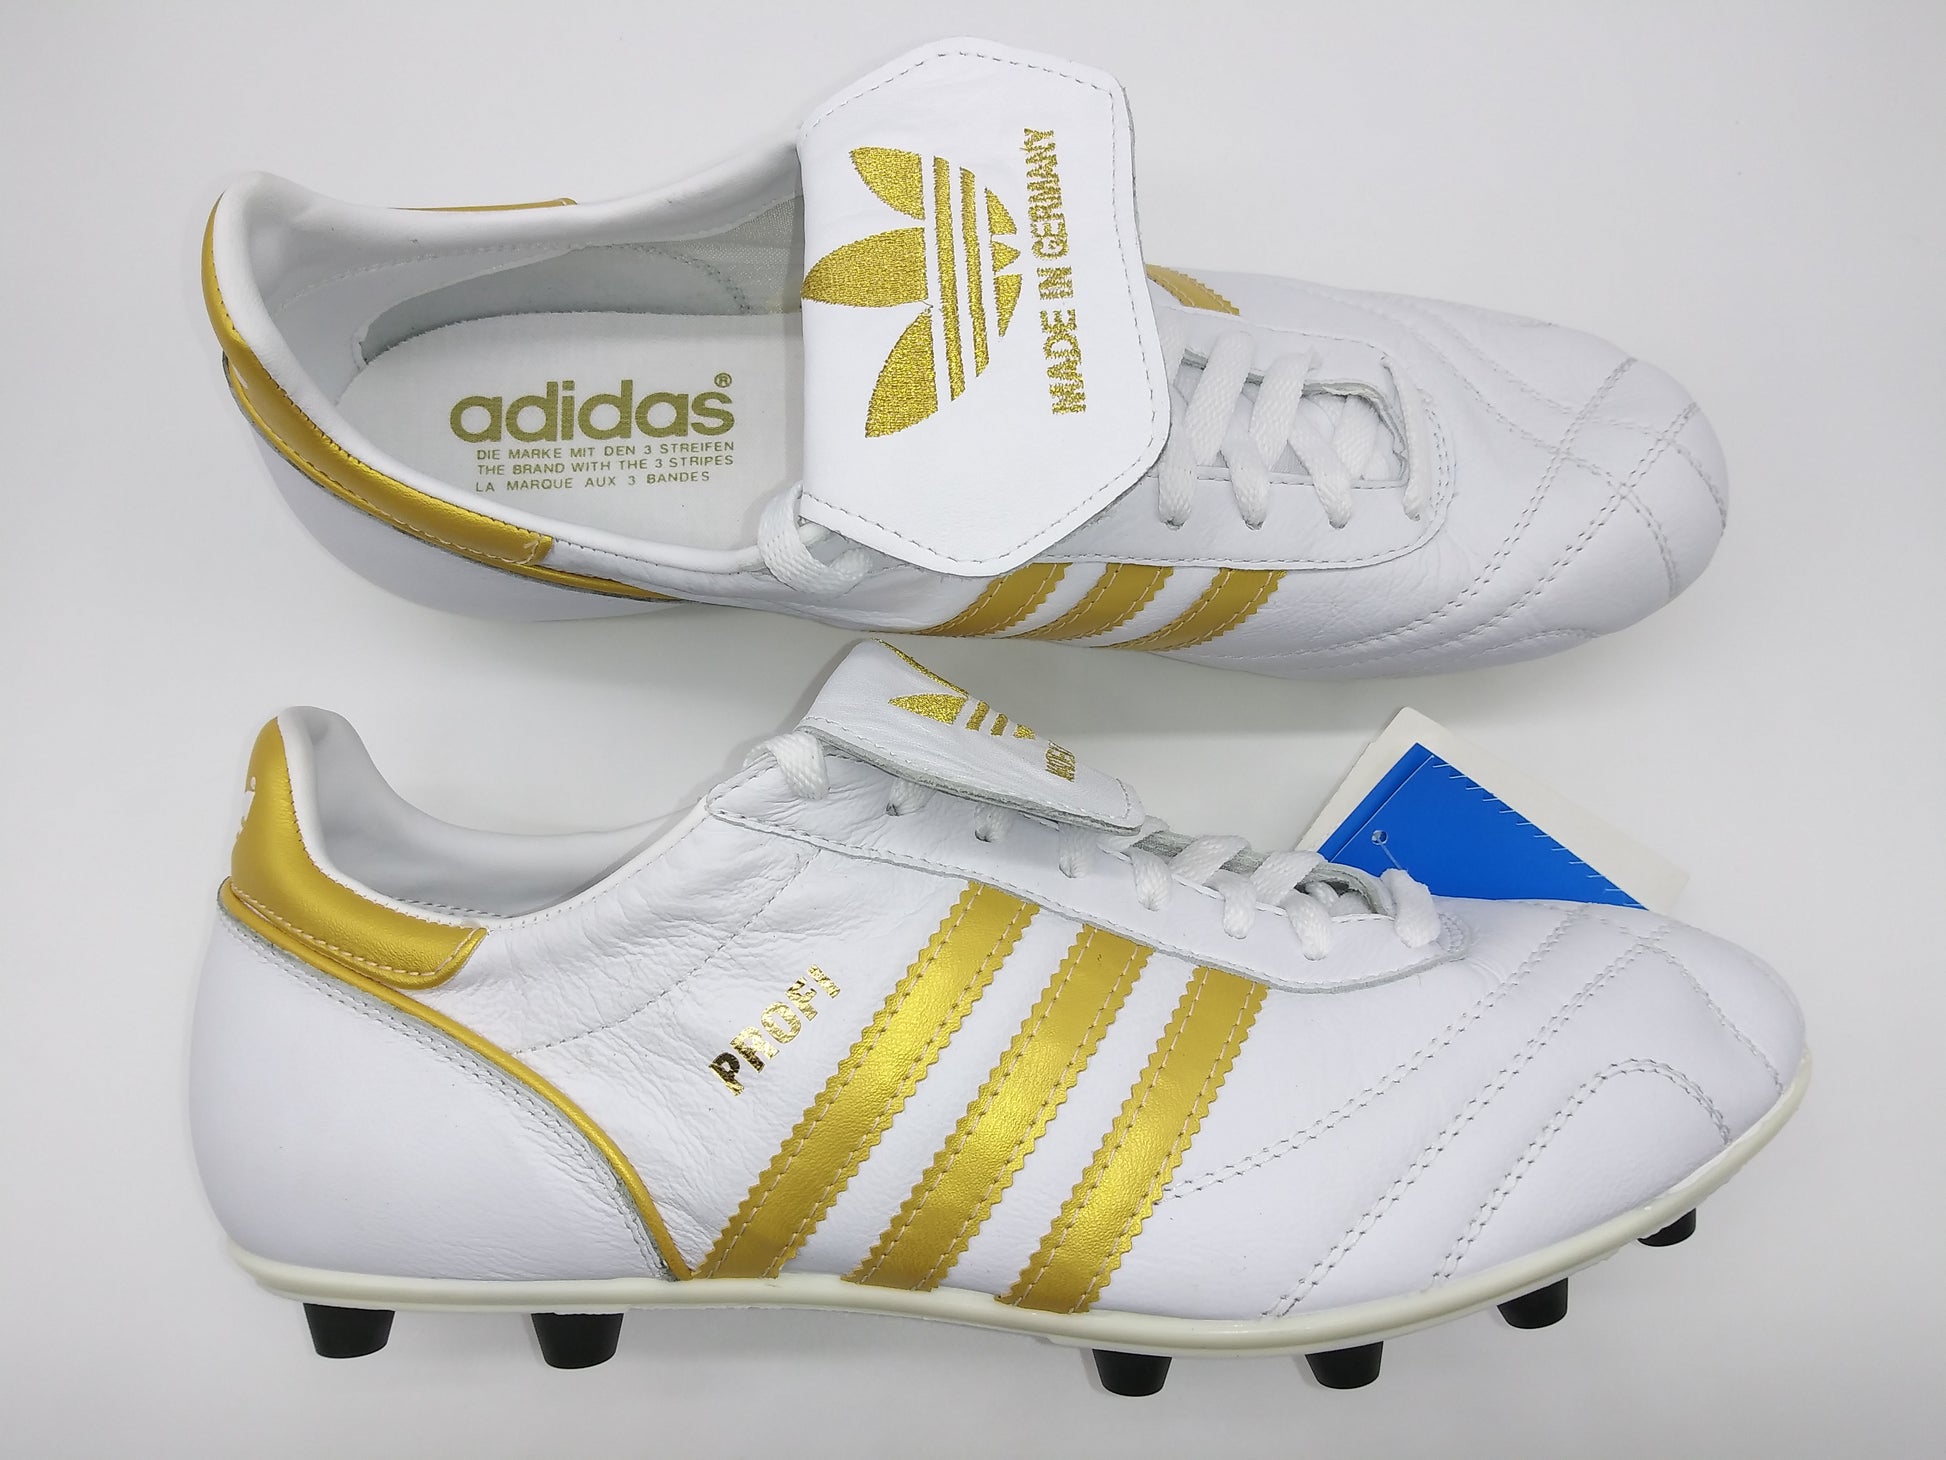 Adidas Profi Liga White Gold Villegas Footwear